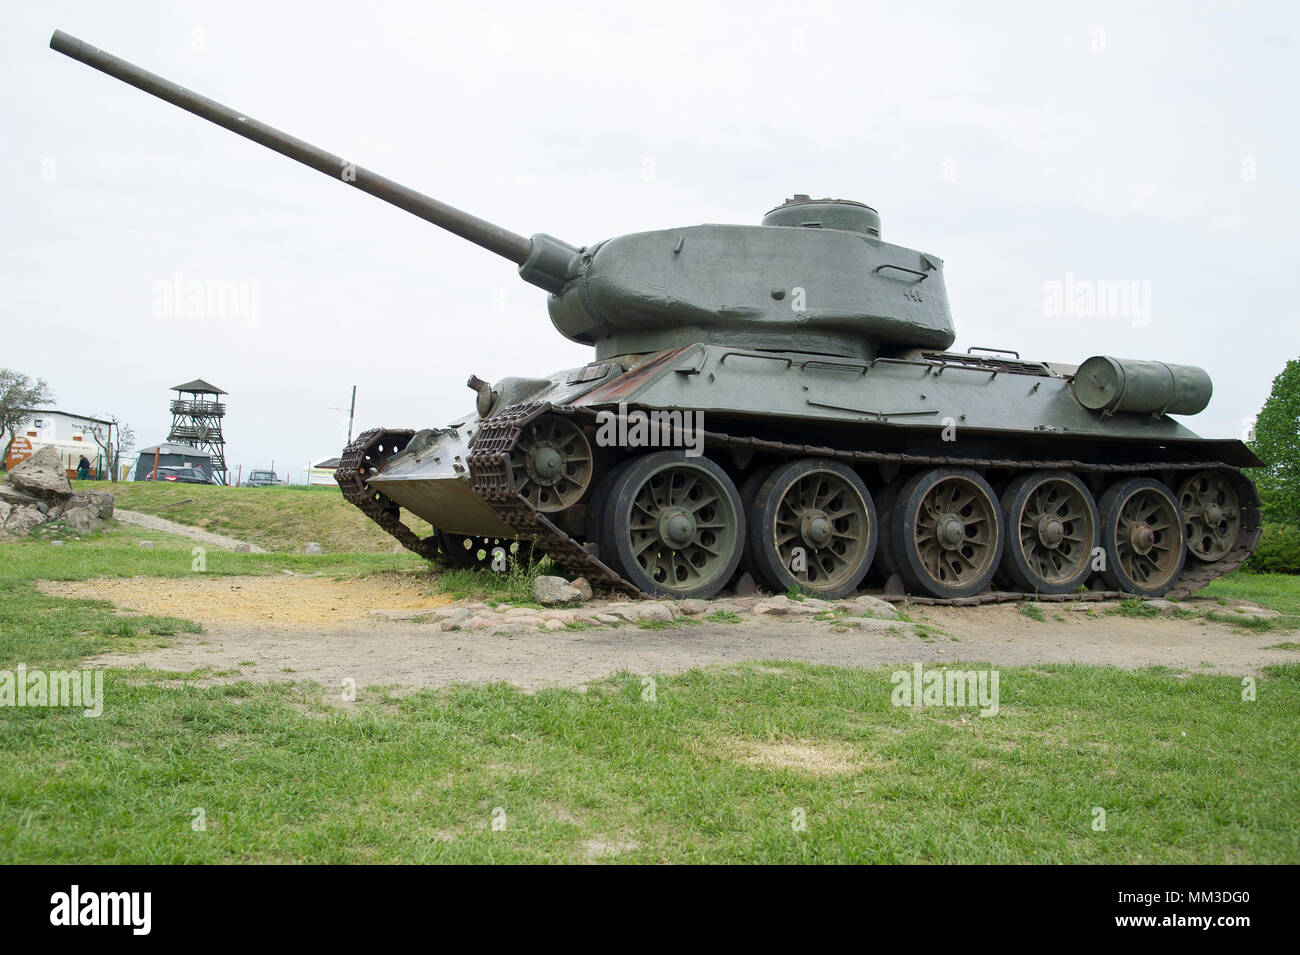 Russian tank T-34 85 in Pniewo, Poland. May 2nd 2018 © Wojciech Strozyk / Alamy Stock Photo Stock Photo